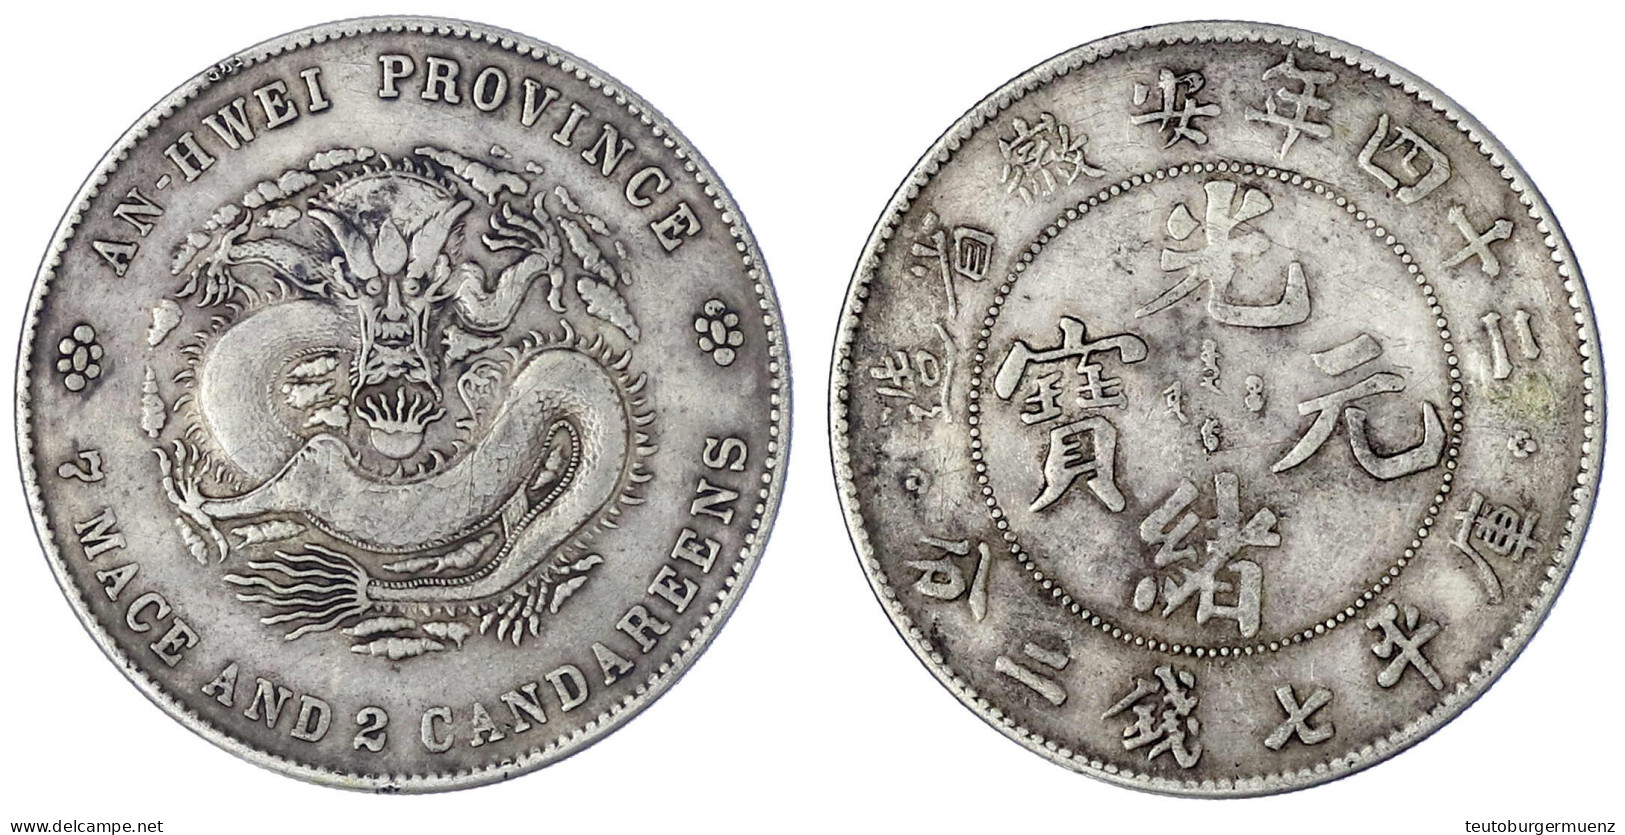 Dollar (Yuan) Jahr 24 = 1898. Provinz An-Hwei. 26,60 G. Sehr Schön, Randfehler, Gereinigt, Selten. Lin Gwo Ming 203. - China